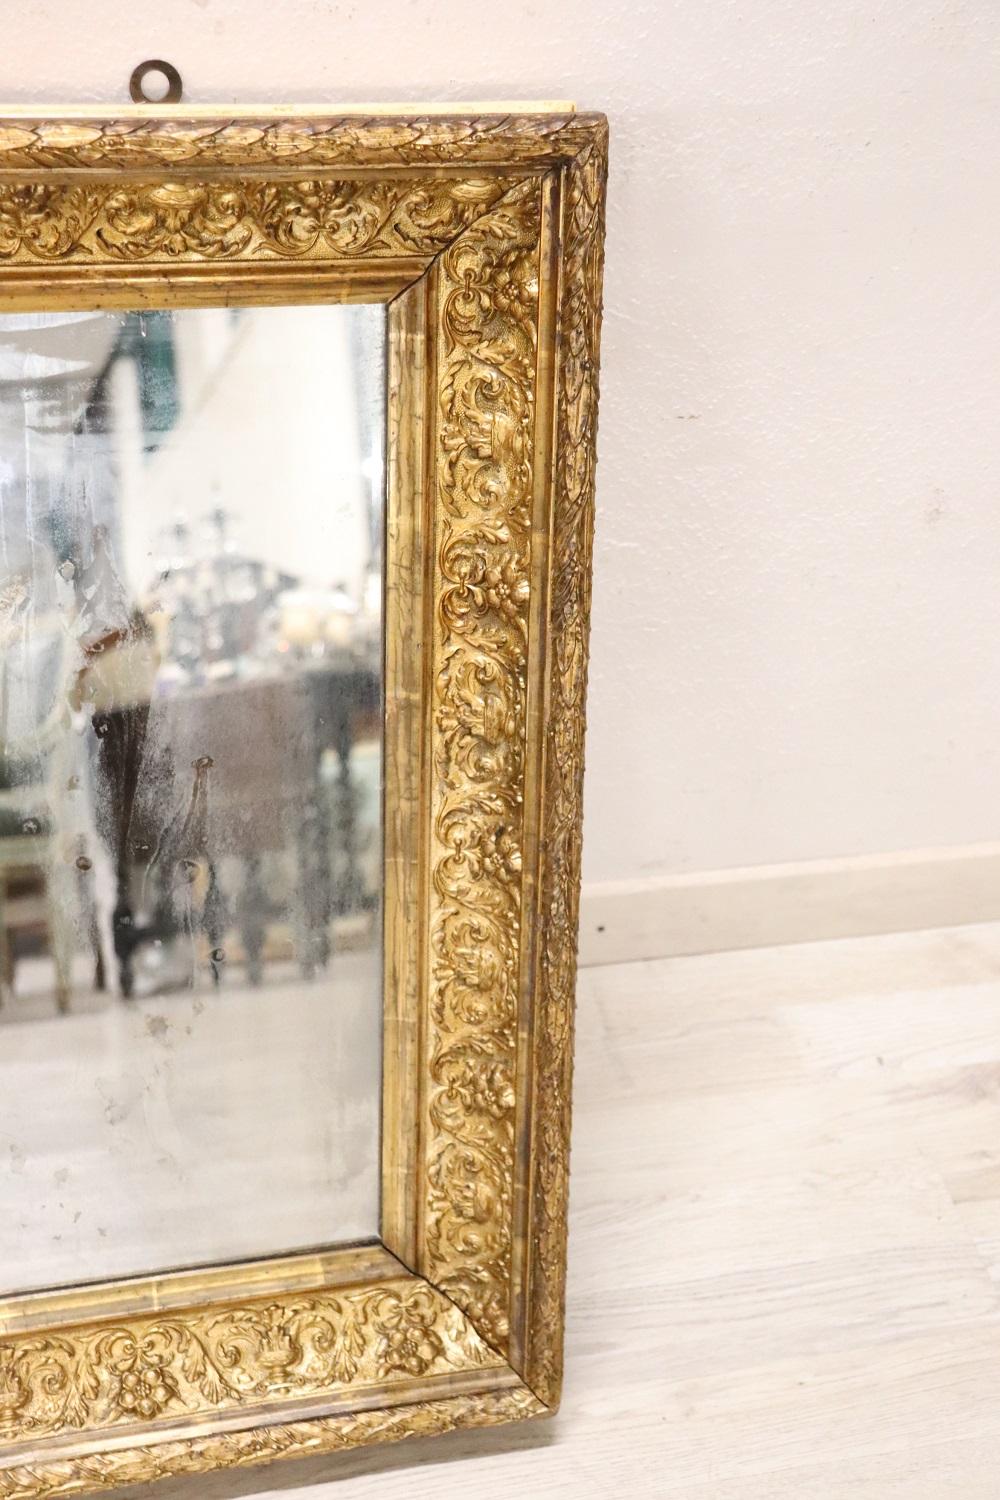 Eleganter antiker italienischer Jugendstil-Wandspiegel aus vergoldetem Pappelholz aus dem frühen 20. Jahrhundert. Der Rahmen zeichnet sich durch eine aufwendige florale Dekoration mit Blumen und Elementen des klassischen Geschmacks aus. Der Spiegel